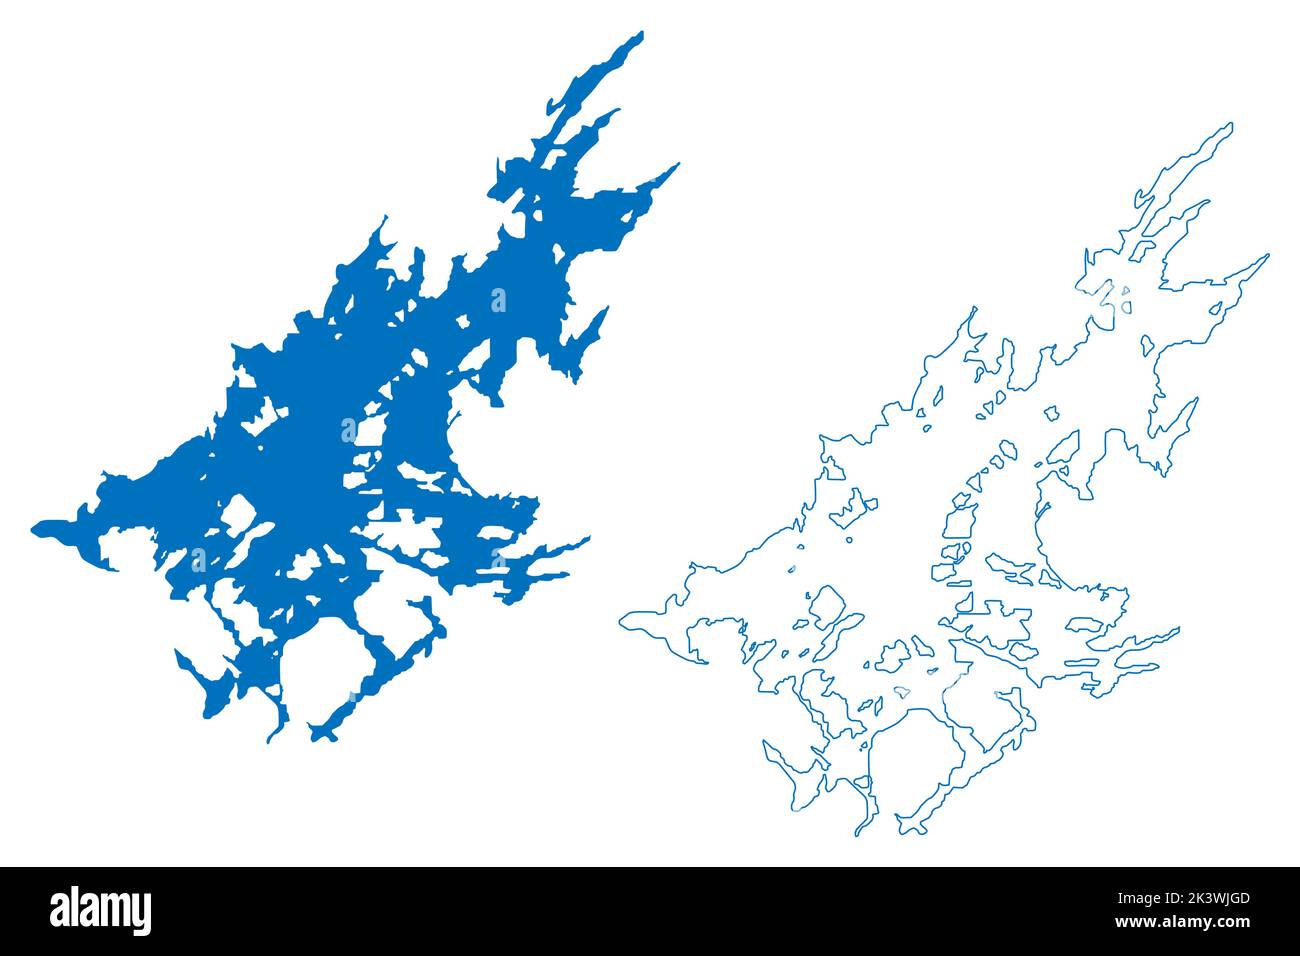 Lake Inari (Republik Finnland) Karte Vektorgrafik, Skizze Inarijärvi oder Inarinjärvi Karte Stock Vektor